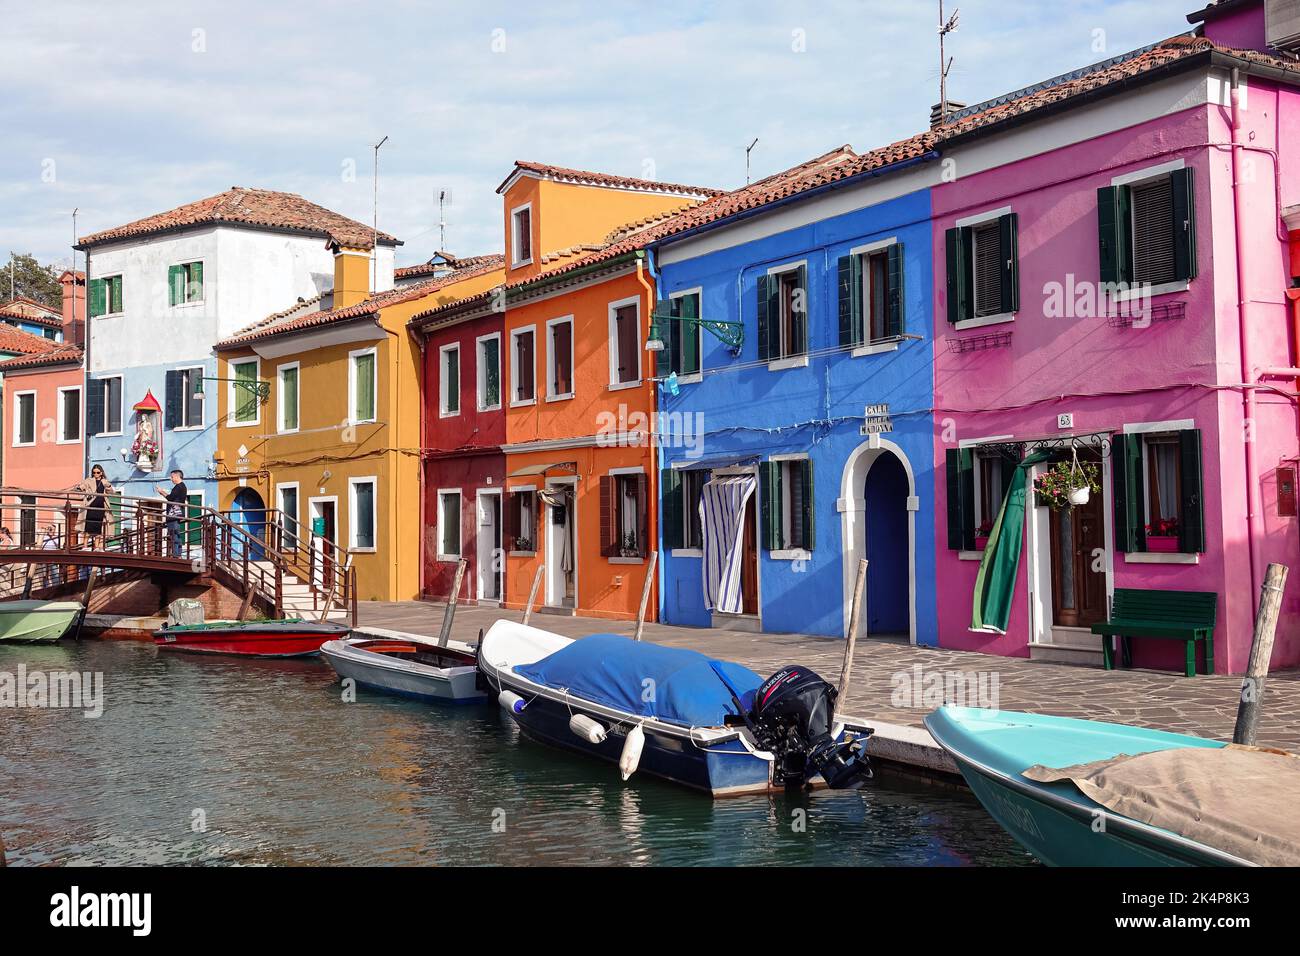 L'île de Burano. Burano est l'une des îles de Venise, célèbre pour ses maisons colorées. Burano, Venise - octobre 2022 Banque D'Images